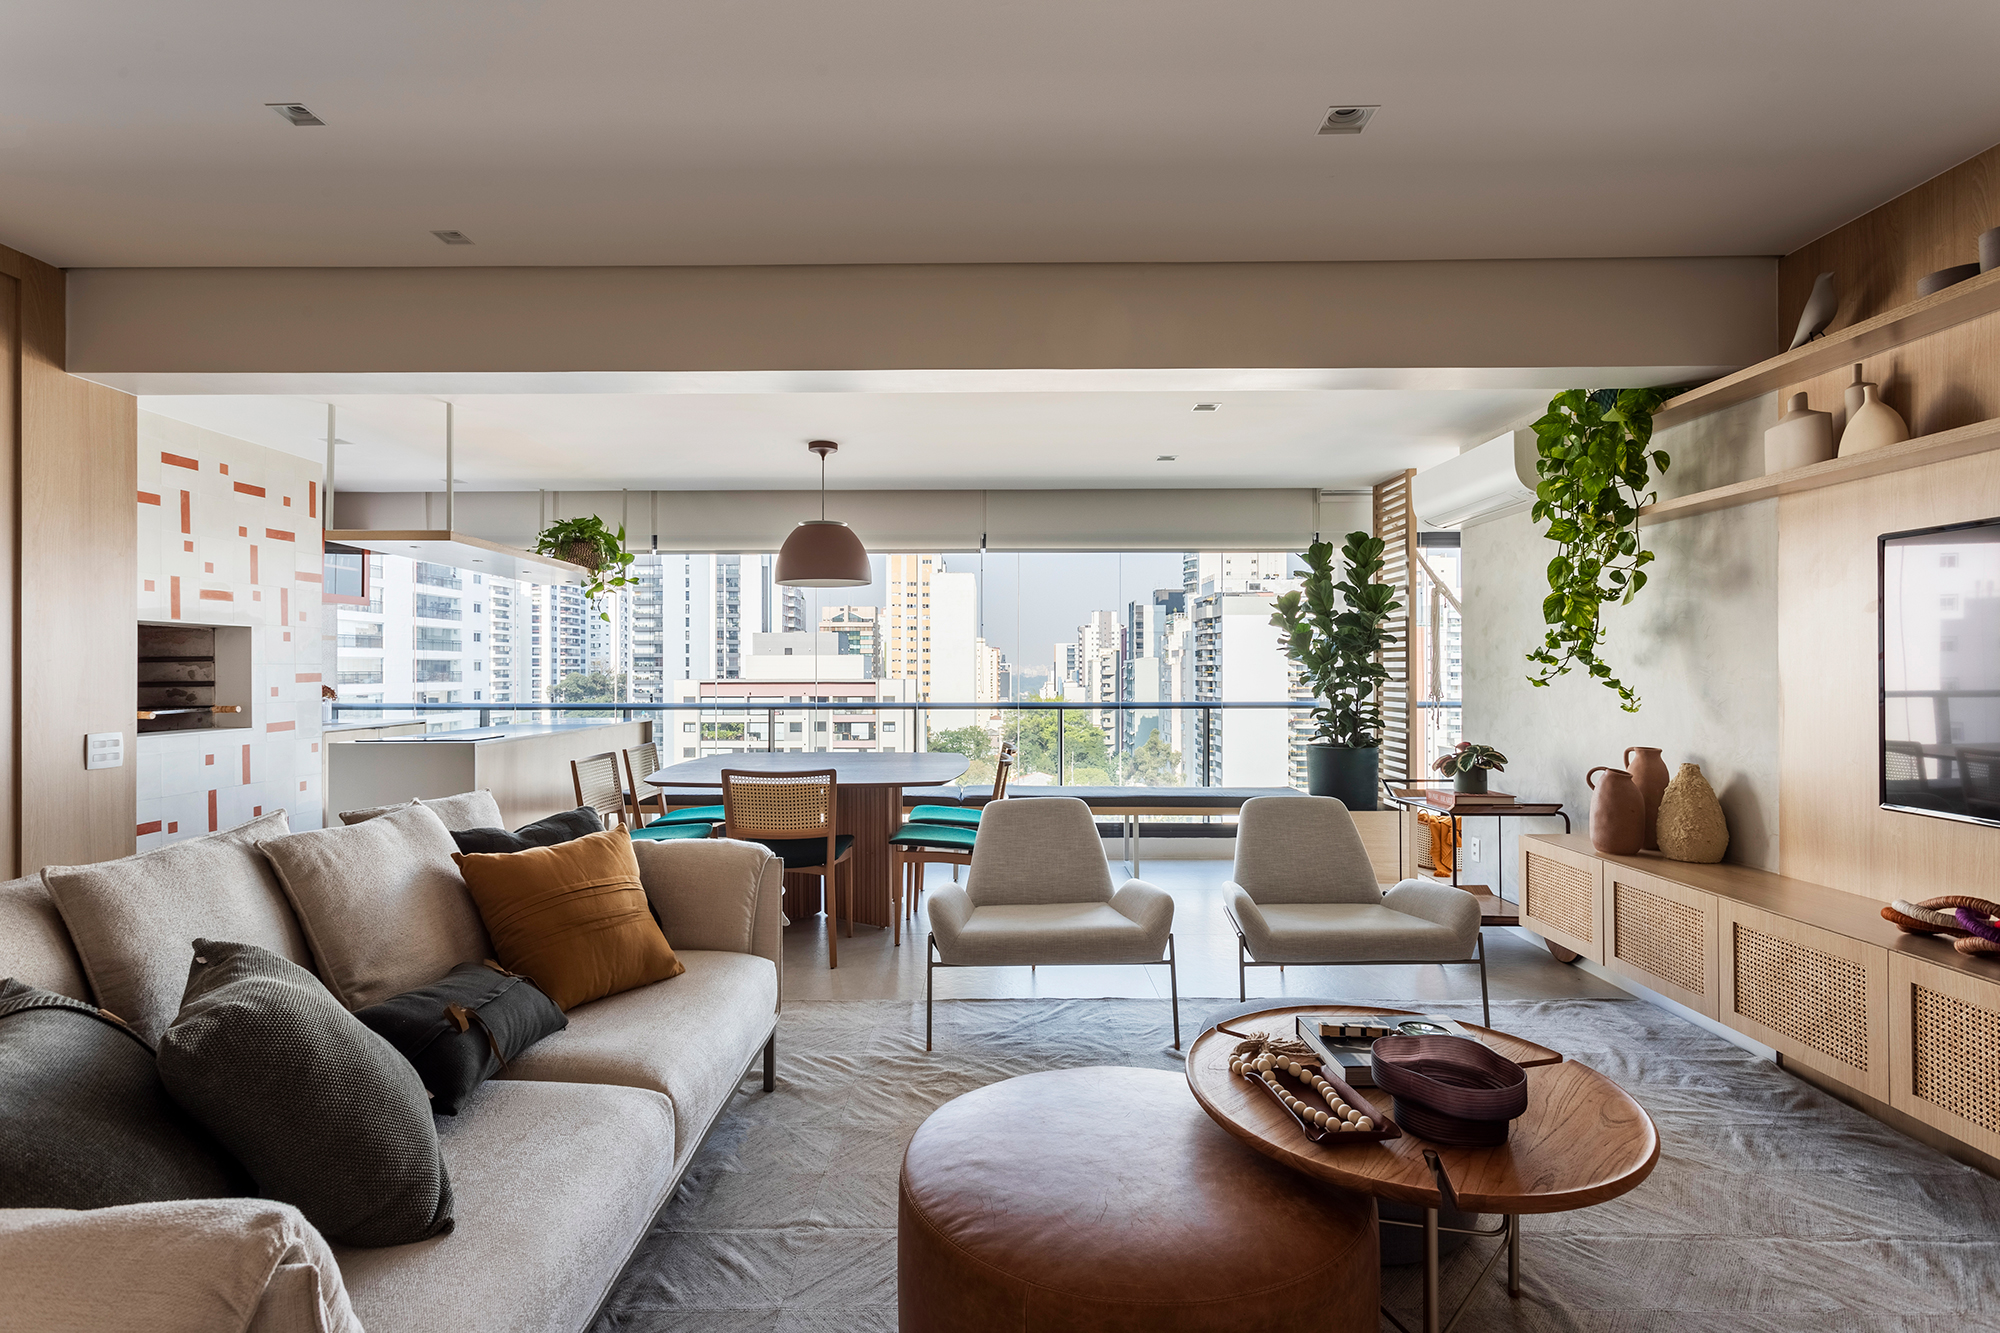 Apartamento ganha canto zen com rede de balanço e chão de pedriscos. Projeto de Interni Arquitetura. Na foto, sala integrada com varanda, marcenaria e espaço gourmet.